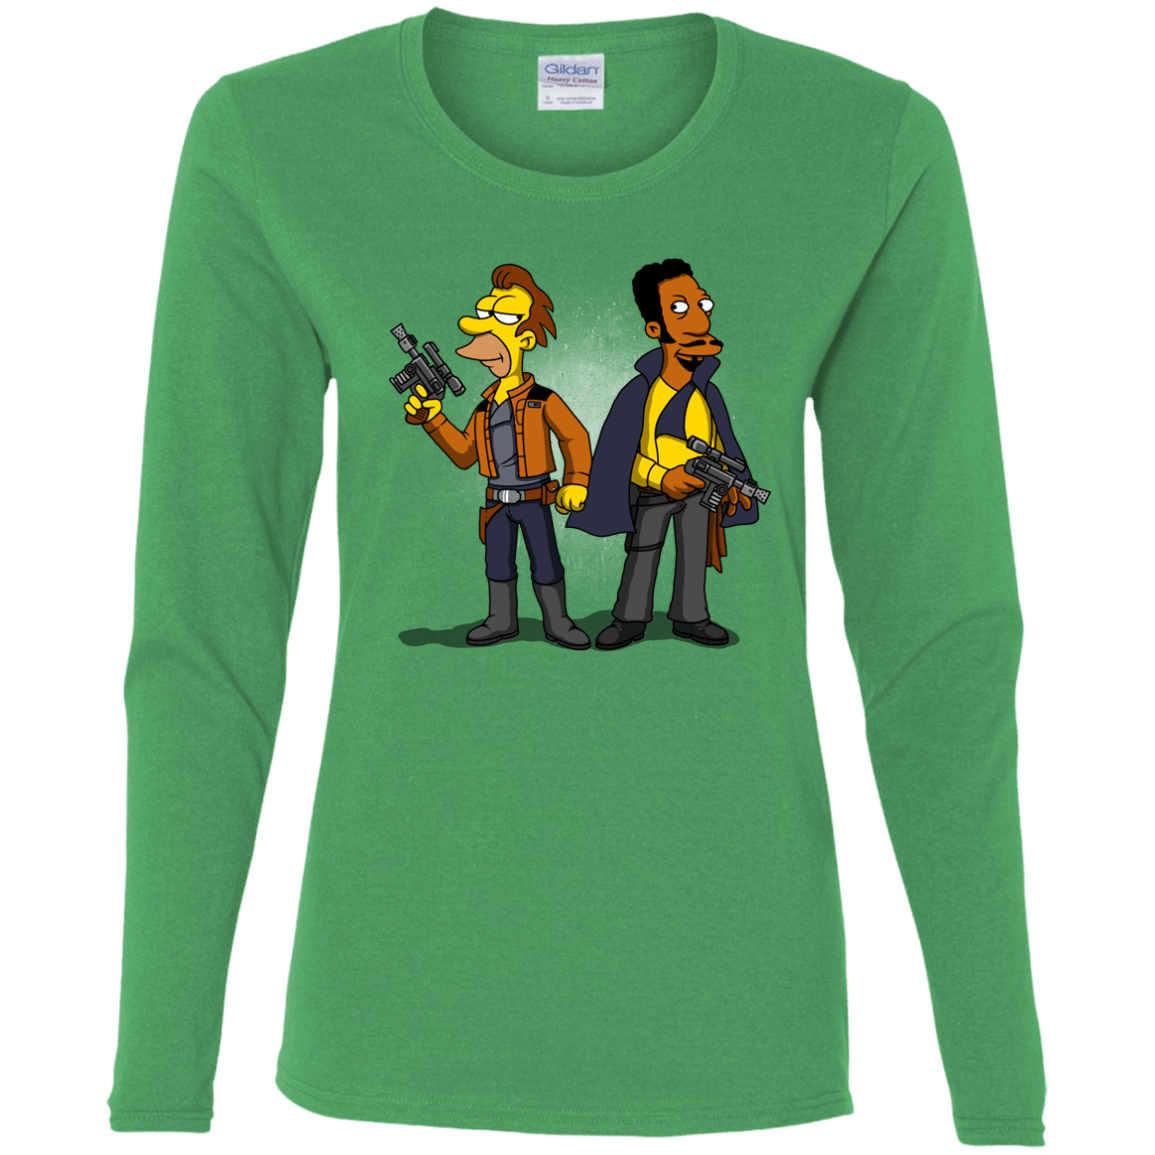 T-Shirts Irish Green / S Smugglers in Love Women's Long Sleeve T-Shirt